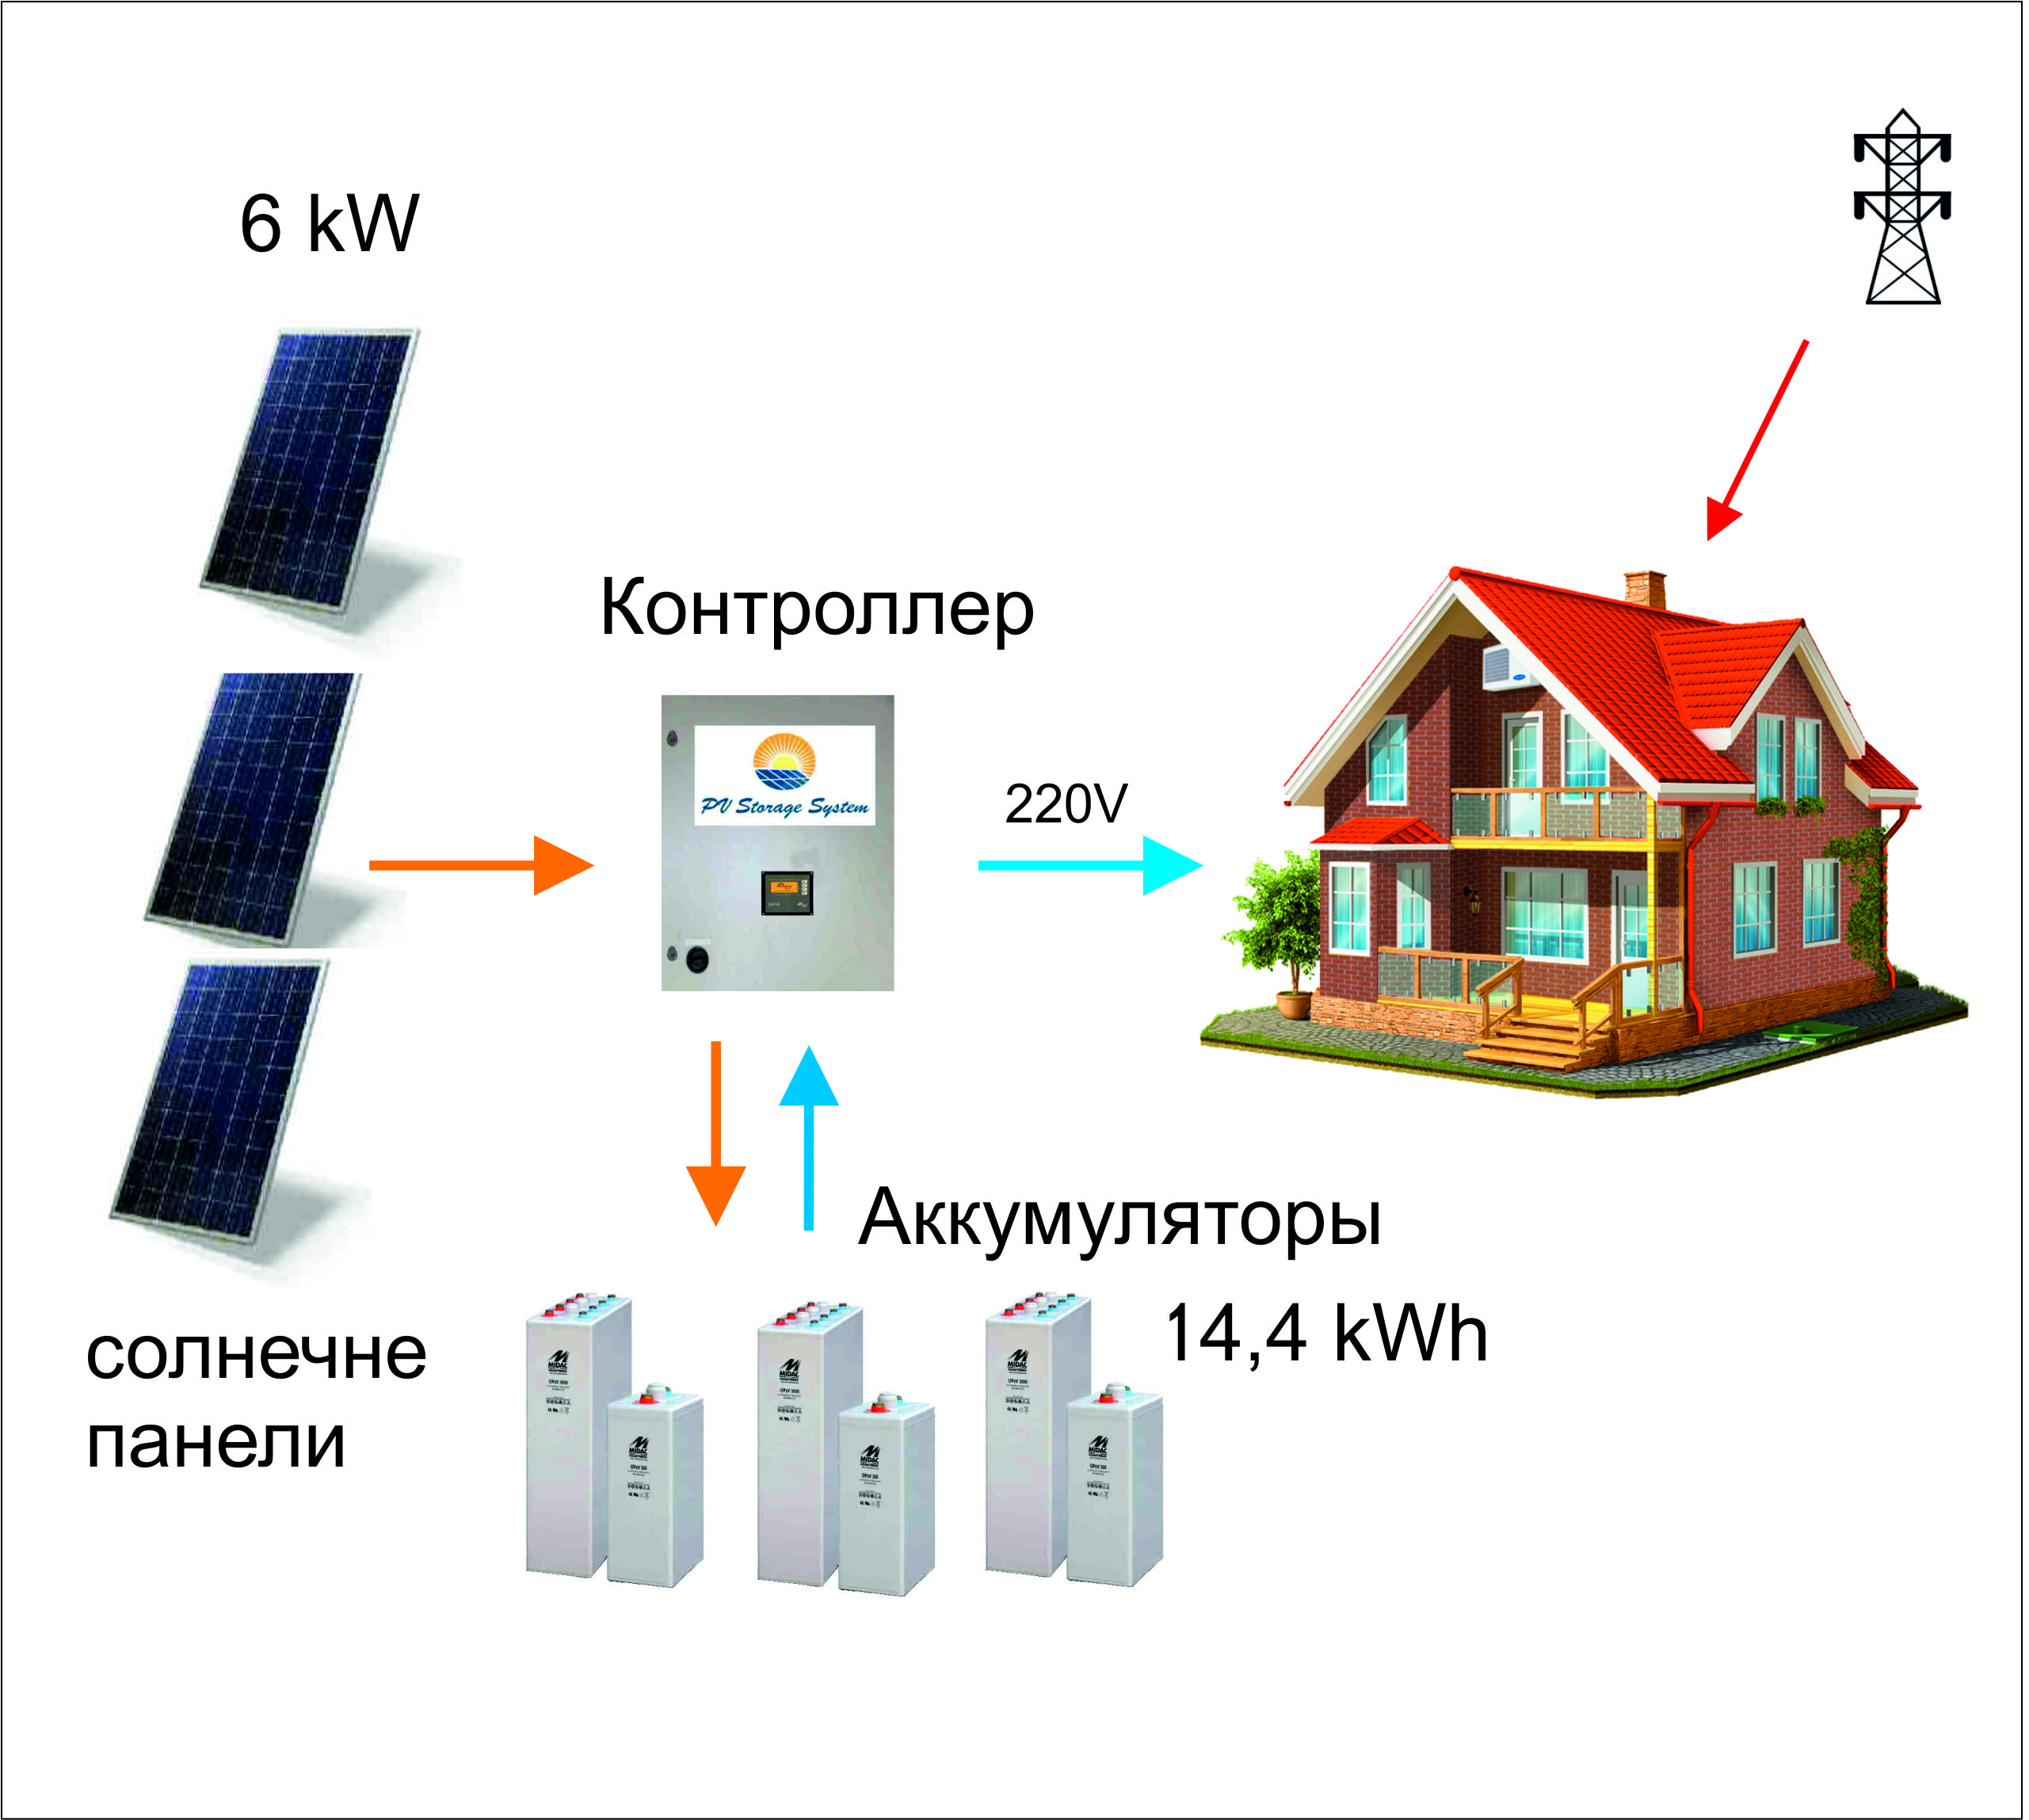 Контроллер для солнечной электростанции пиковой мощности 6 кВт.></div>
		<div class=